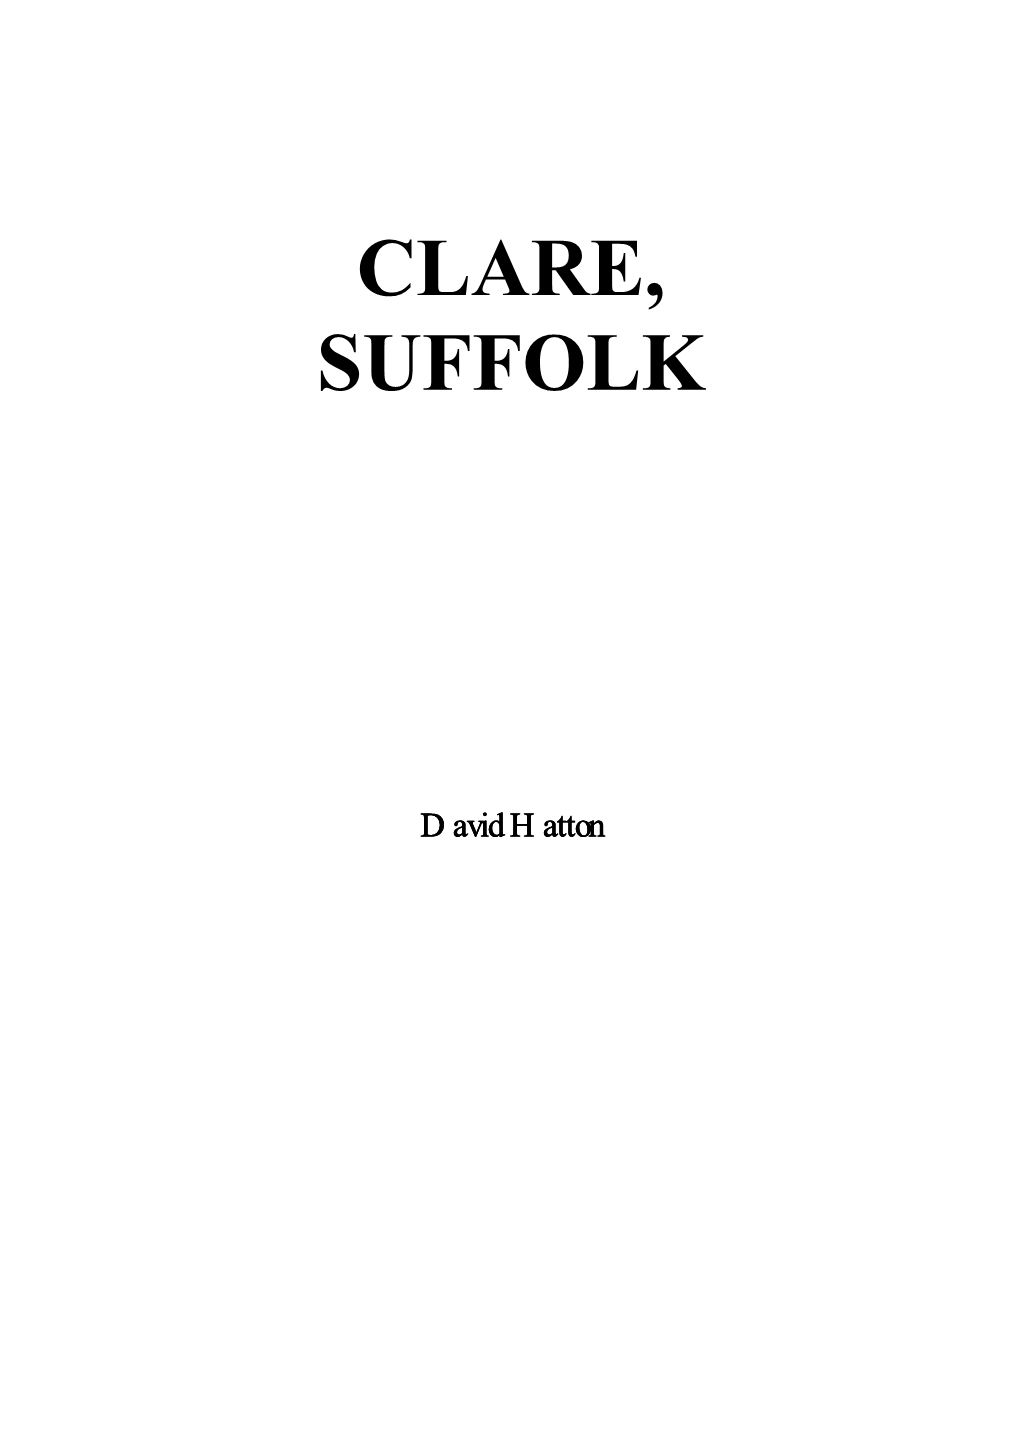 Clare, Suffolk